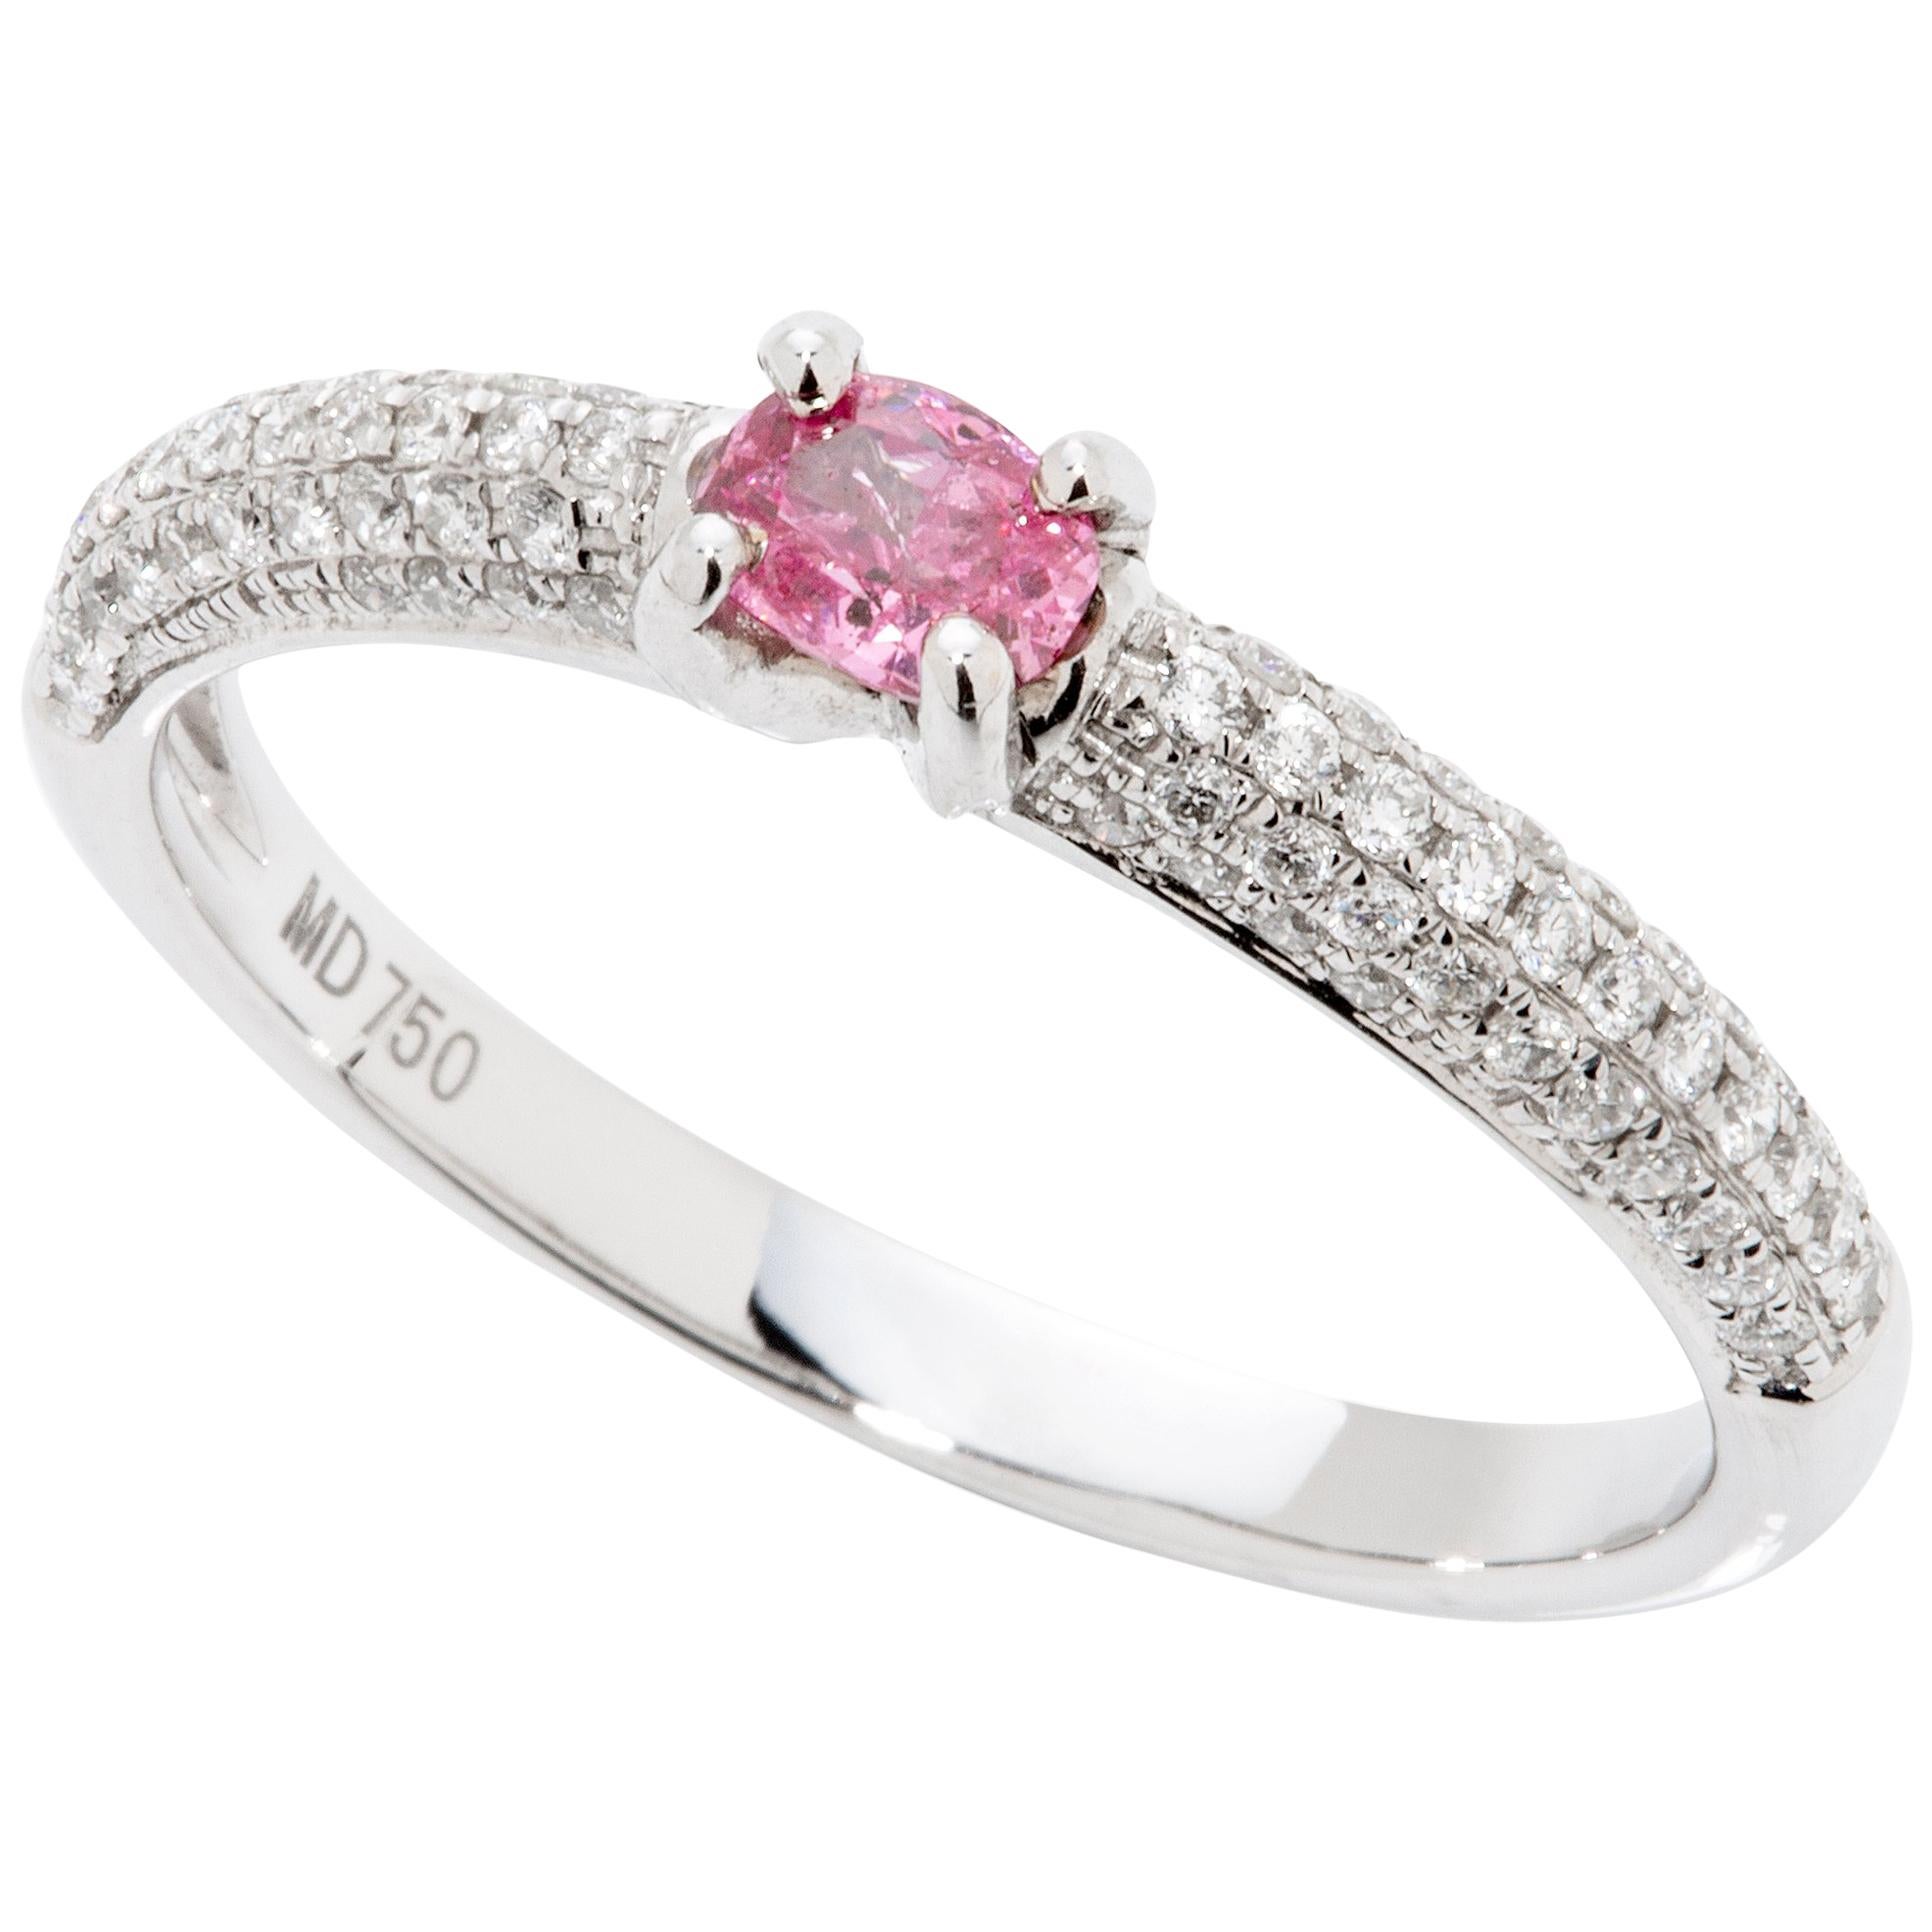 Fancy Vivid Purplish Pink 0.18 Carat GIA Certified Diamond Ring